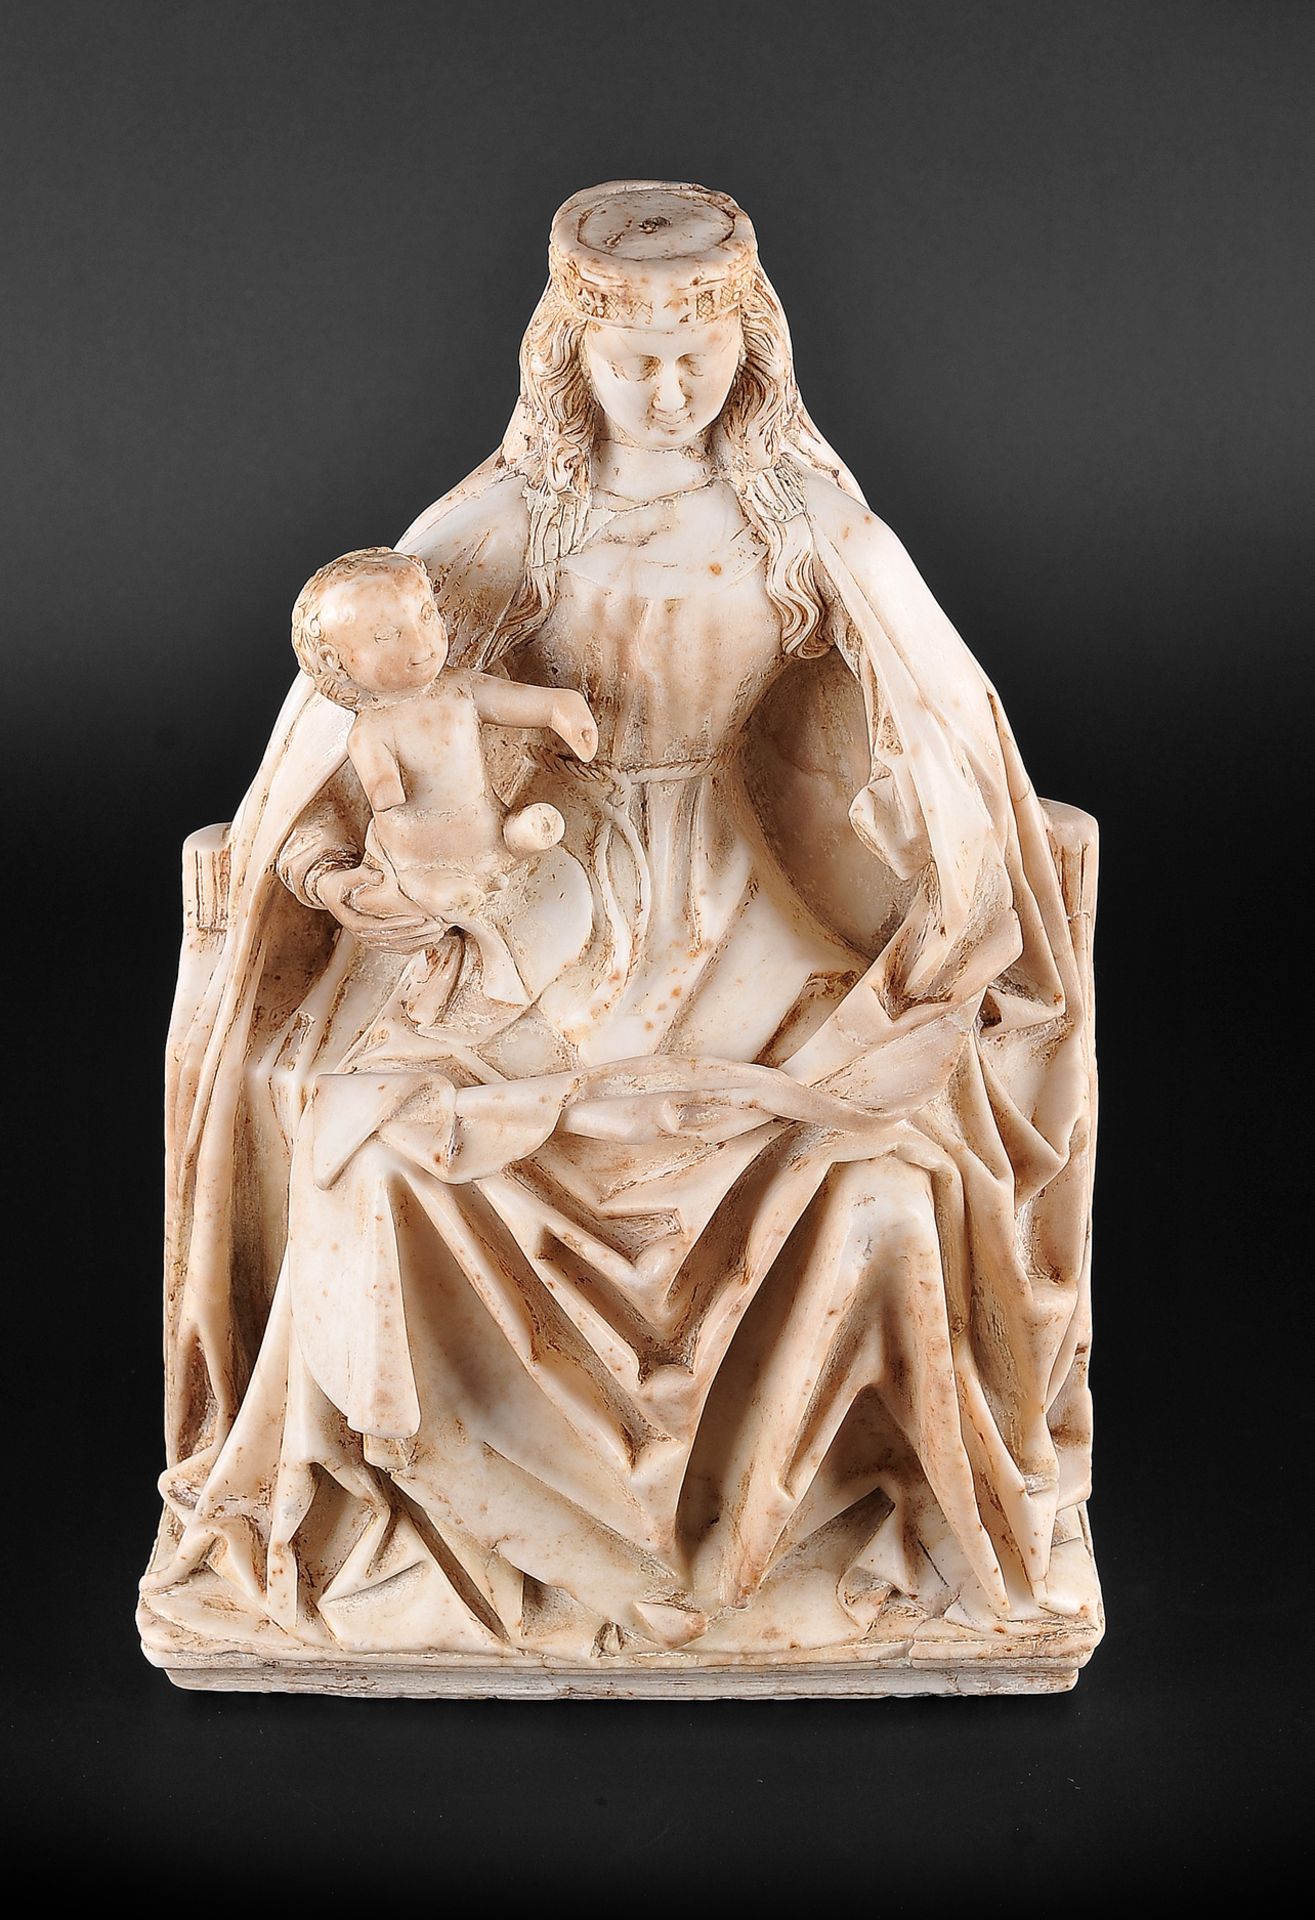 Gil de Siloe, Antwerpen 1440 – 1501 Burgos (und Werkstatt), Sitzende Madonna, um 1485/90 - Bild 2 aus 25